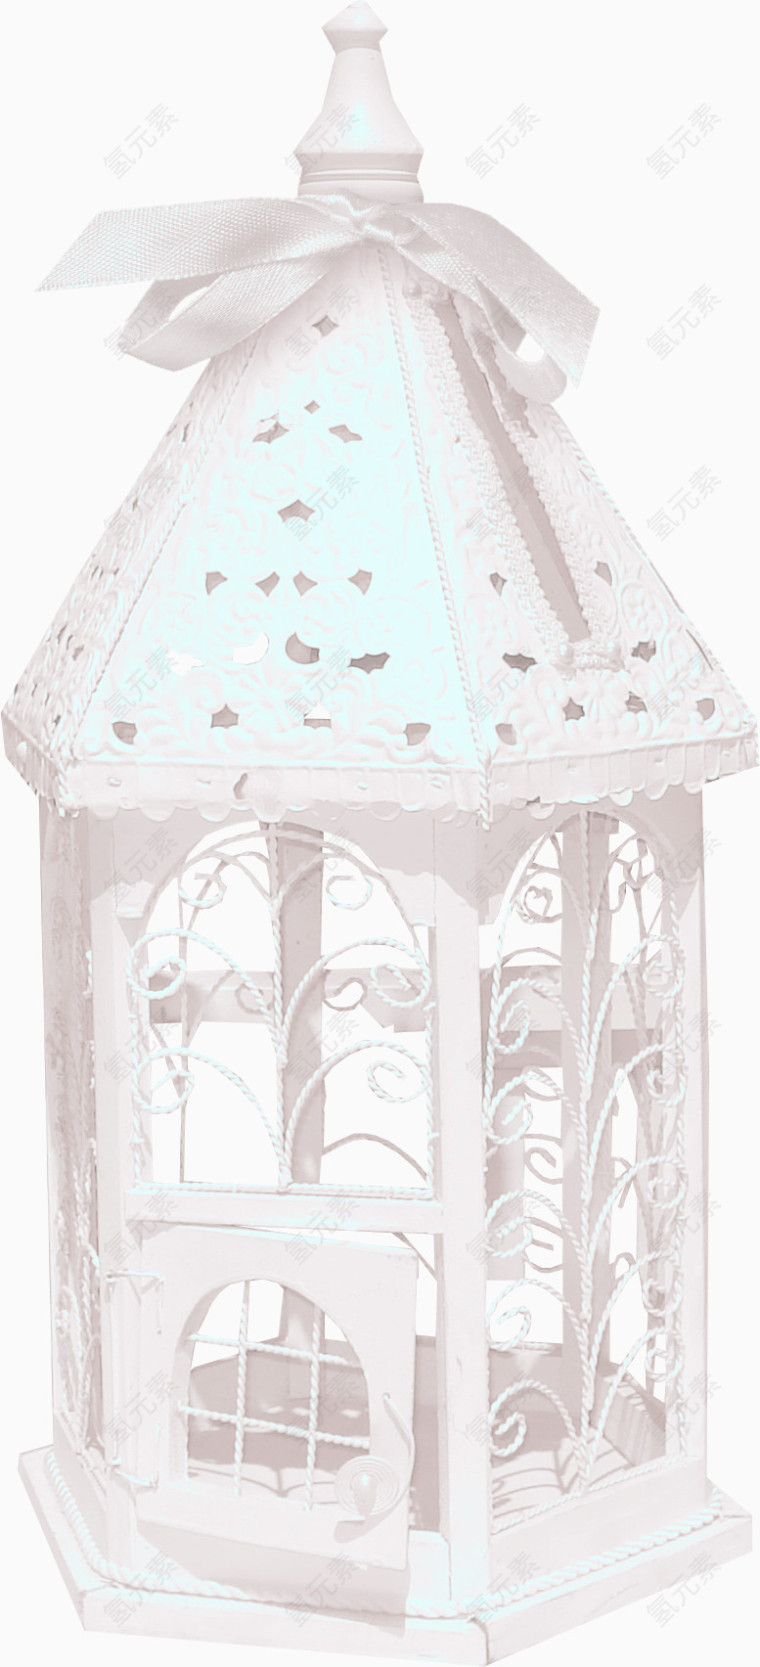 白色尖塔小房子